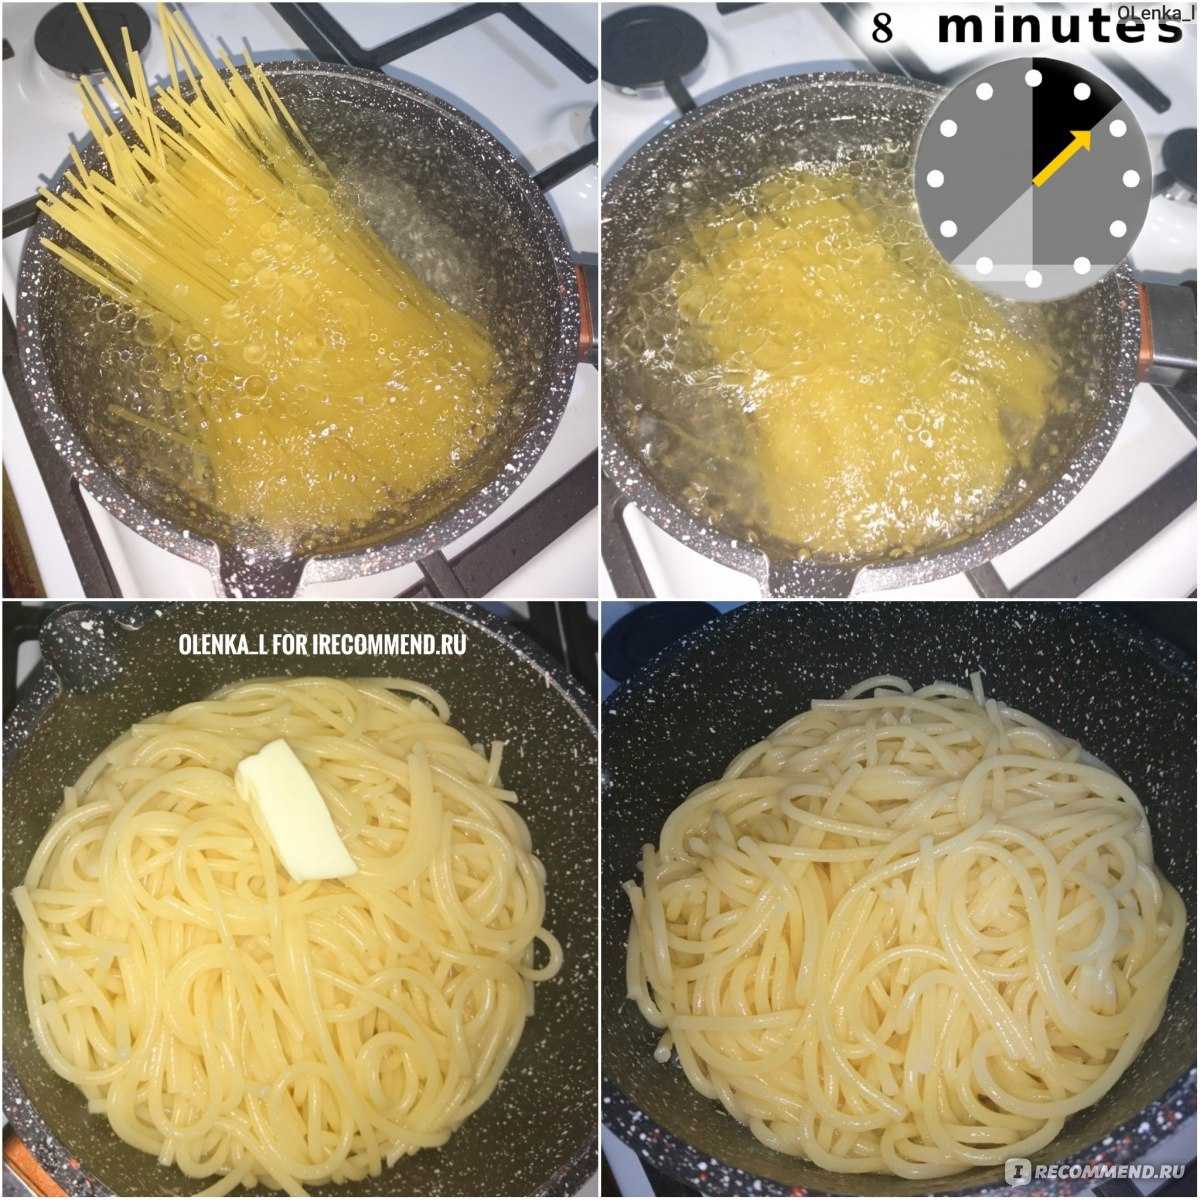 Как варить макароны: пошаговая инструкция - сколько варить, чтобы не слипались